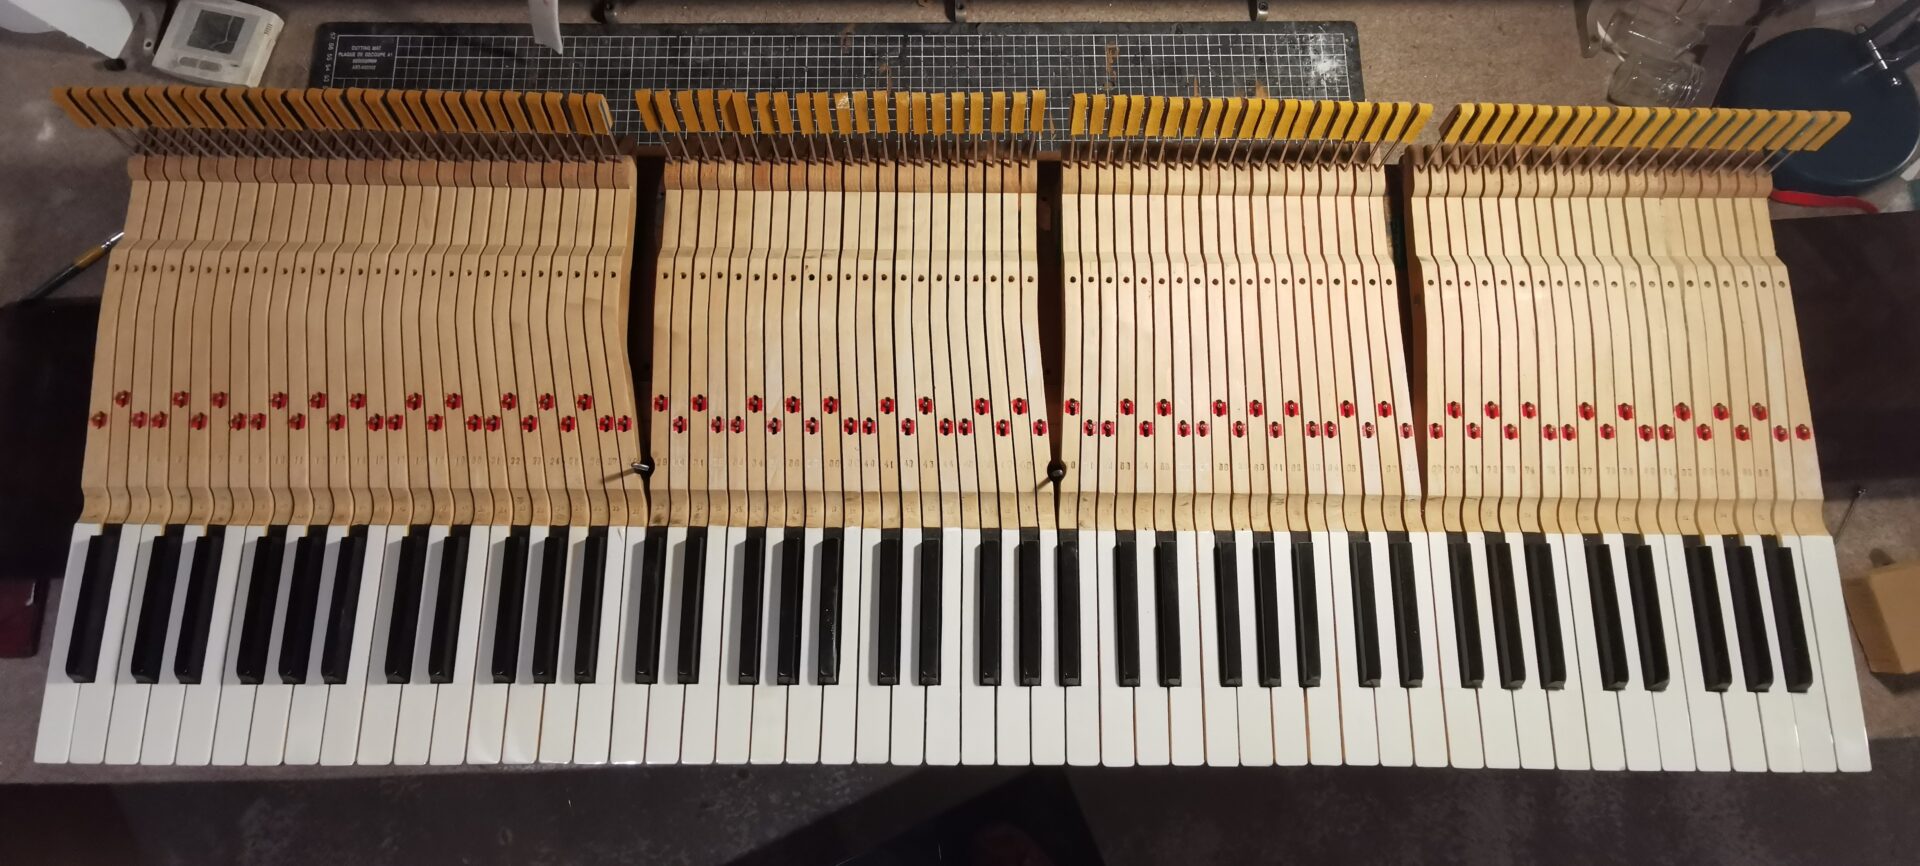 clavier en ivoire restauration piano quart de queue Kriegelstein "Bijou" de 1914 dans l'atelier de restauration de piano de Marion Lainé en Savoie